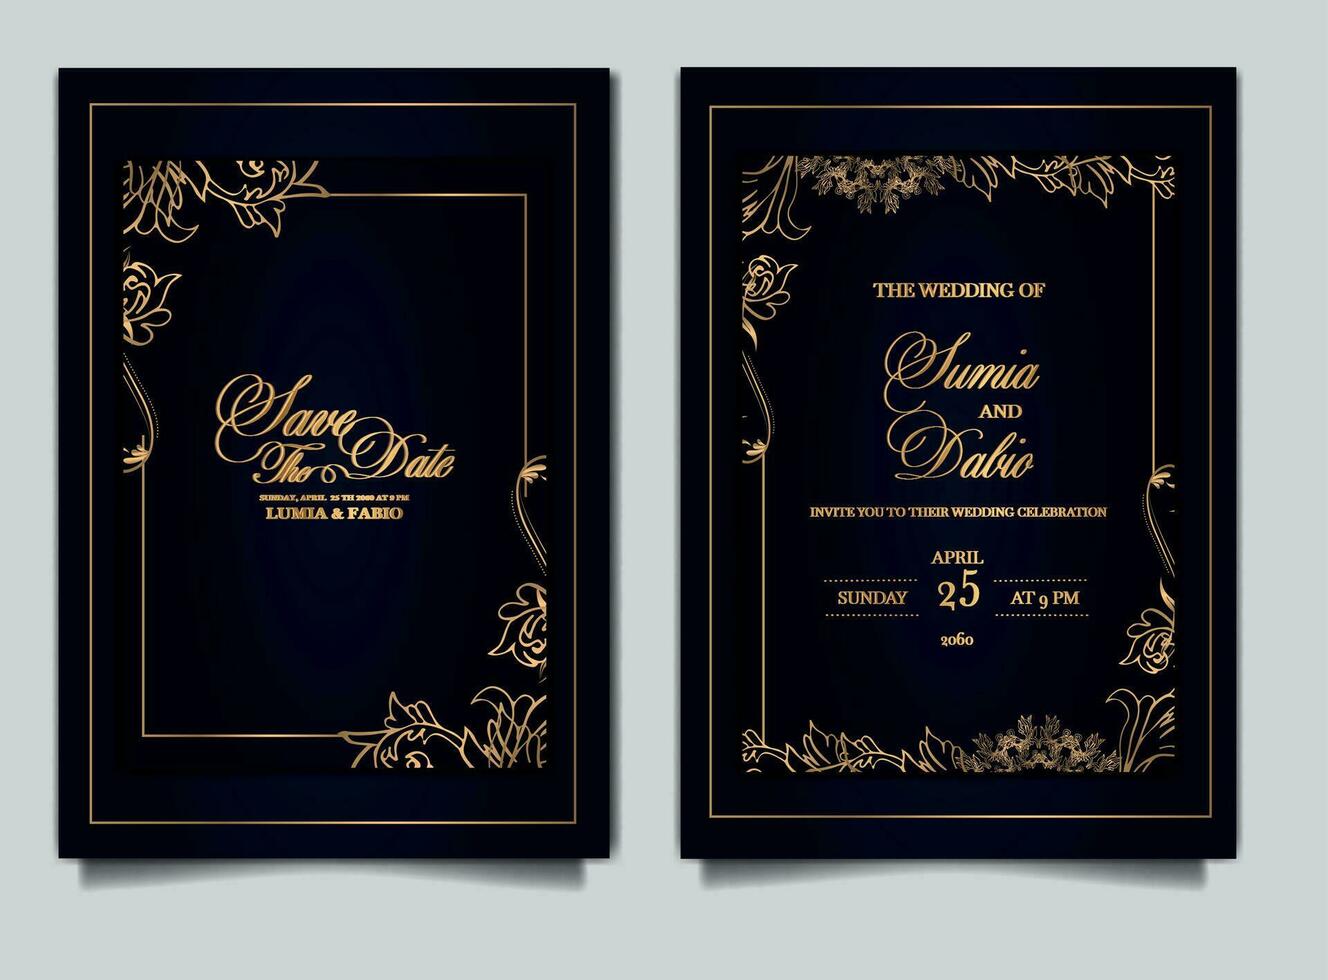 Luxus-Hochzeitseinladungskarten vektor